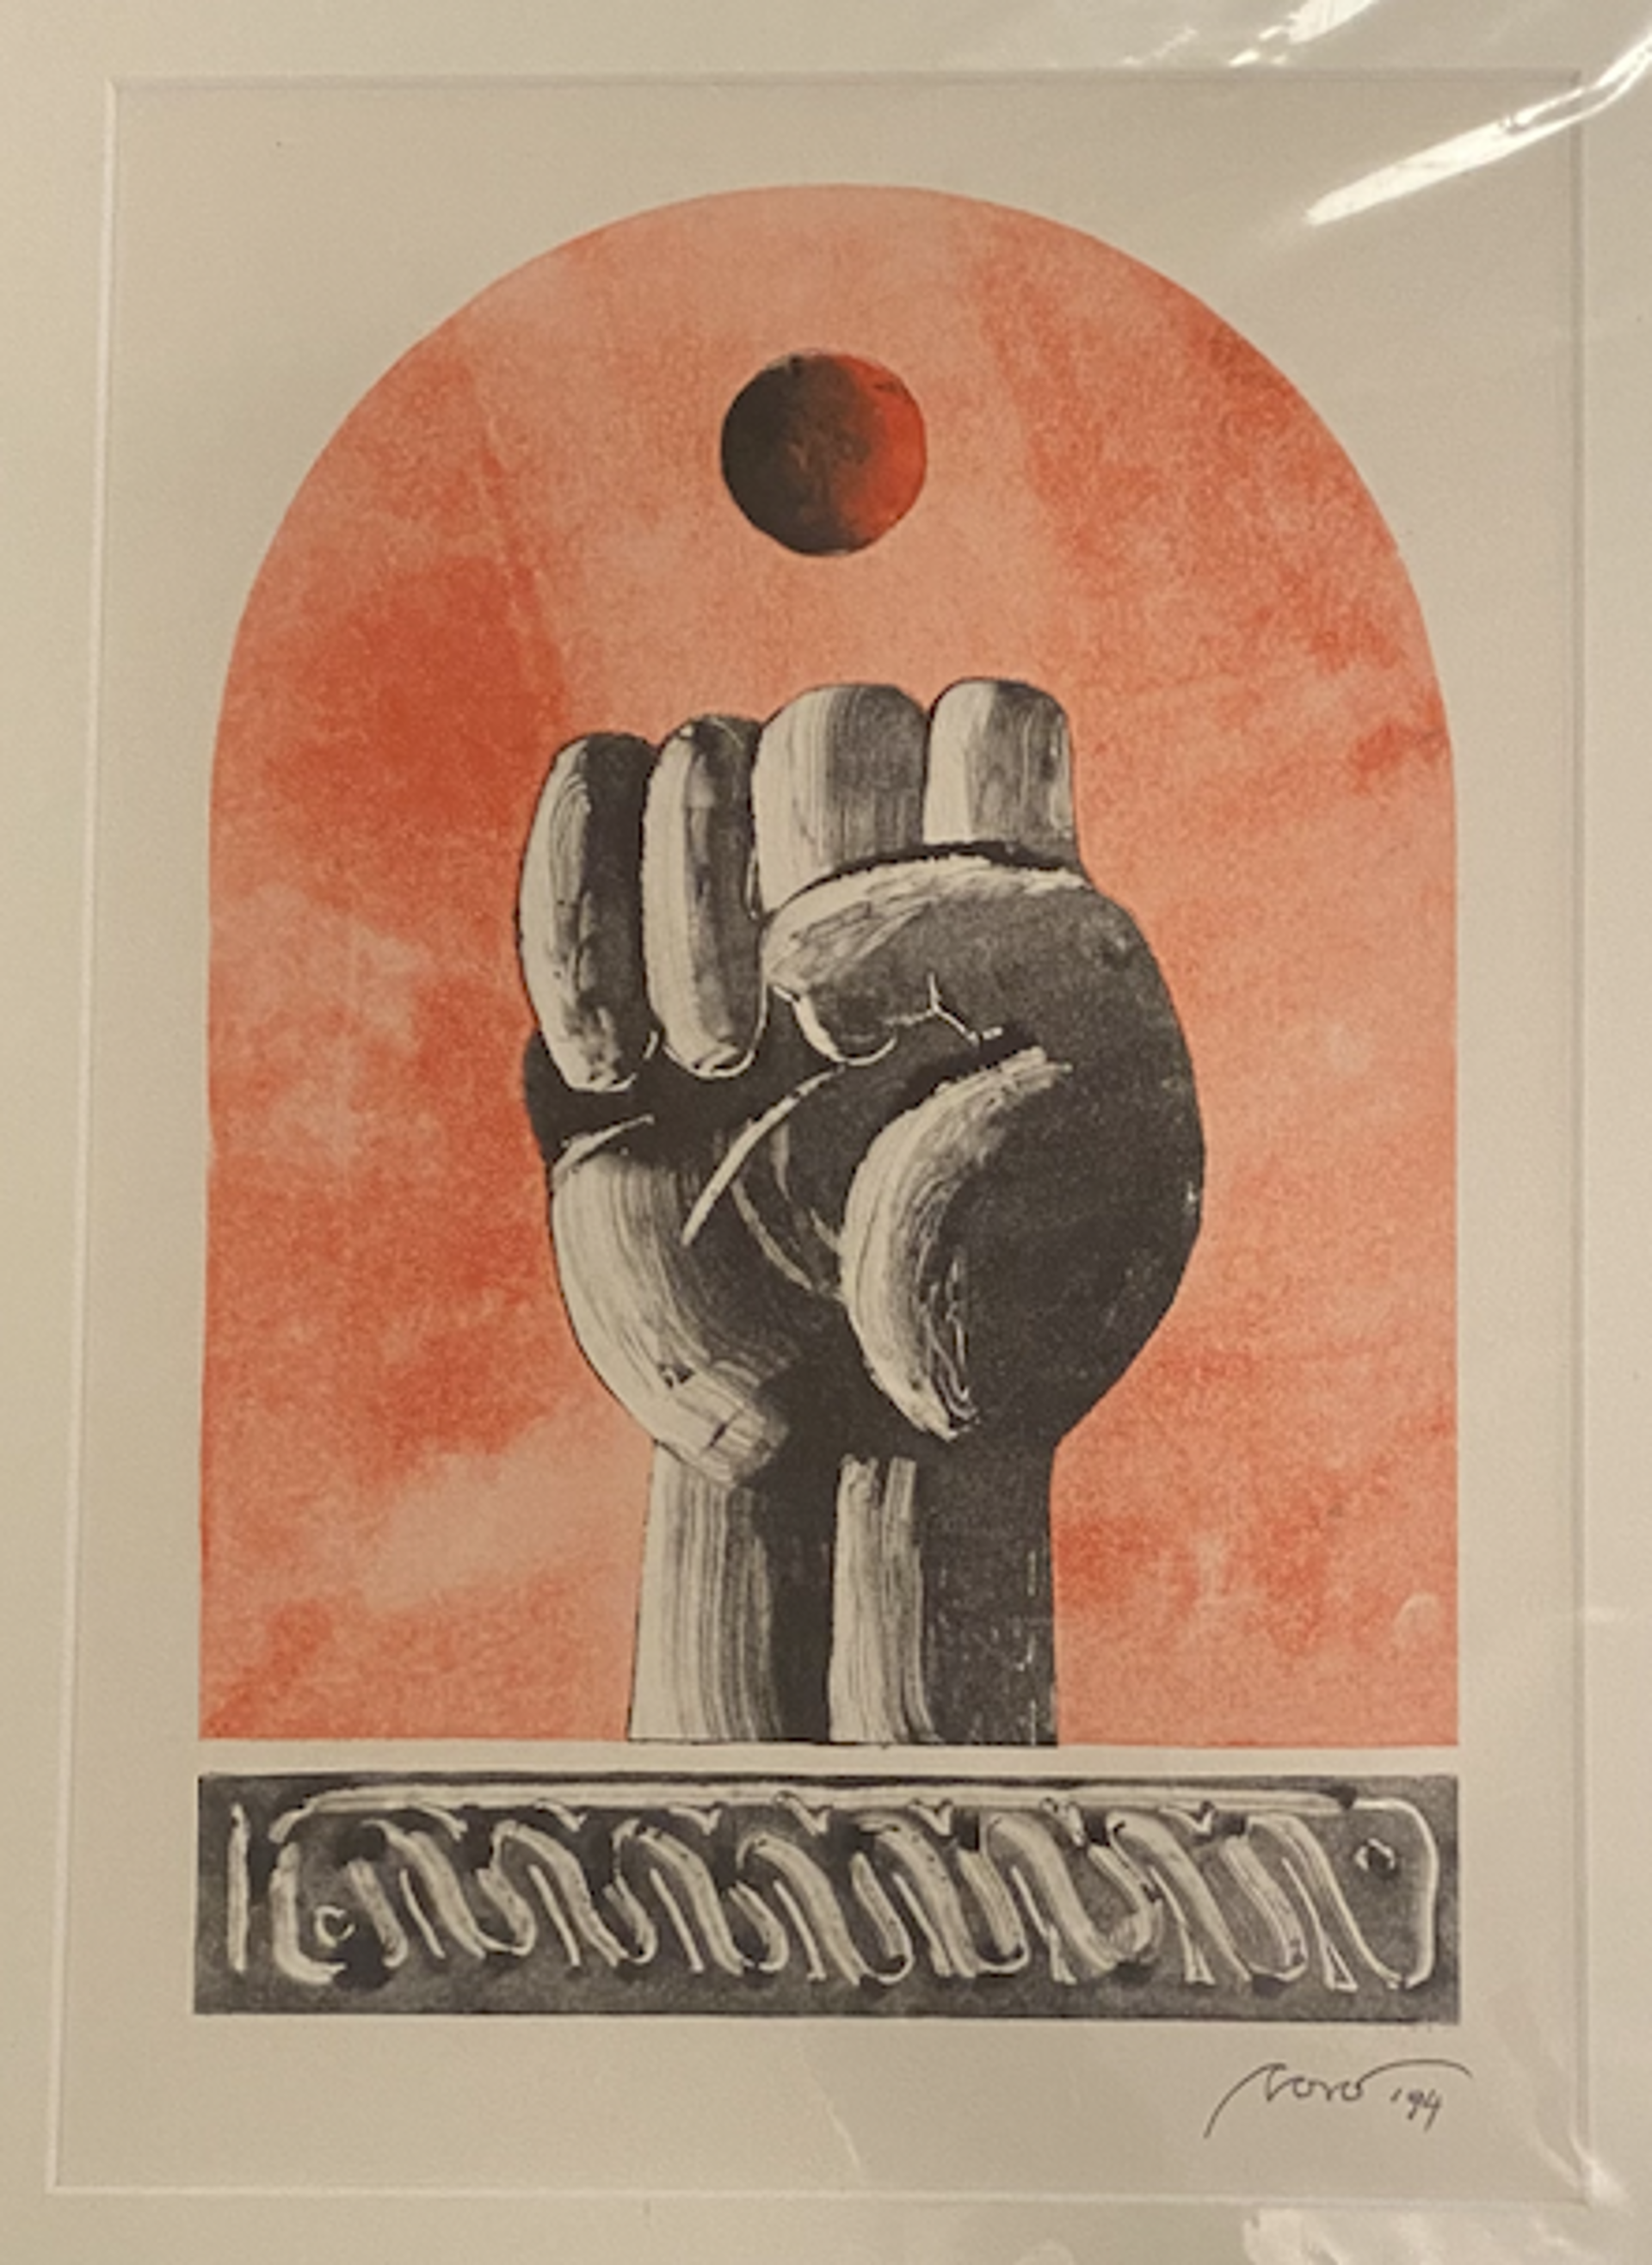 Puño (Fist) by Marcelo Novo